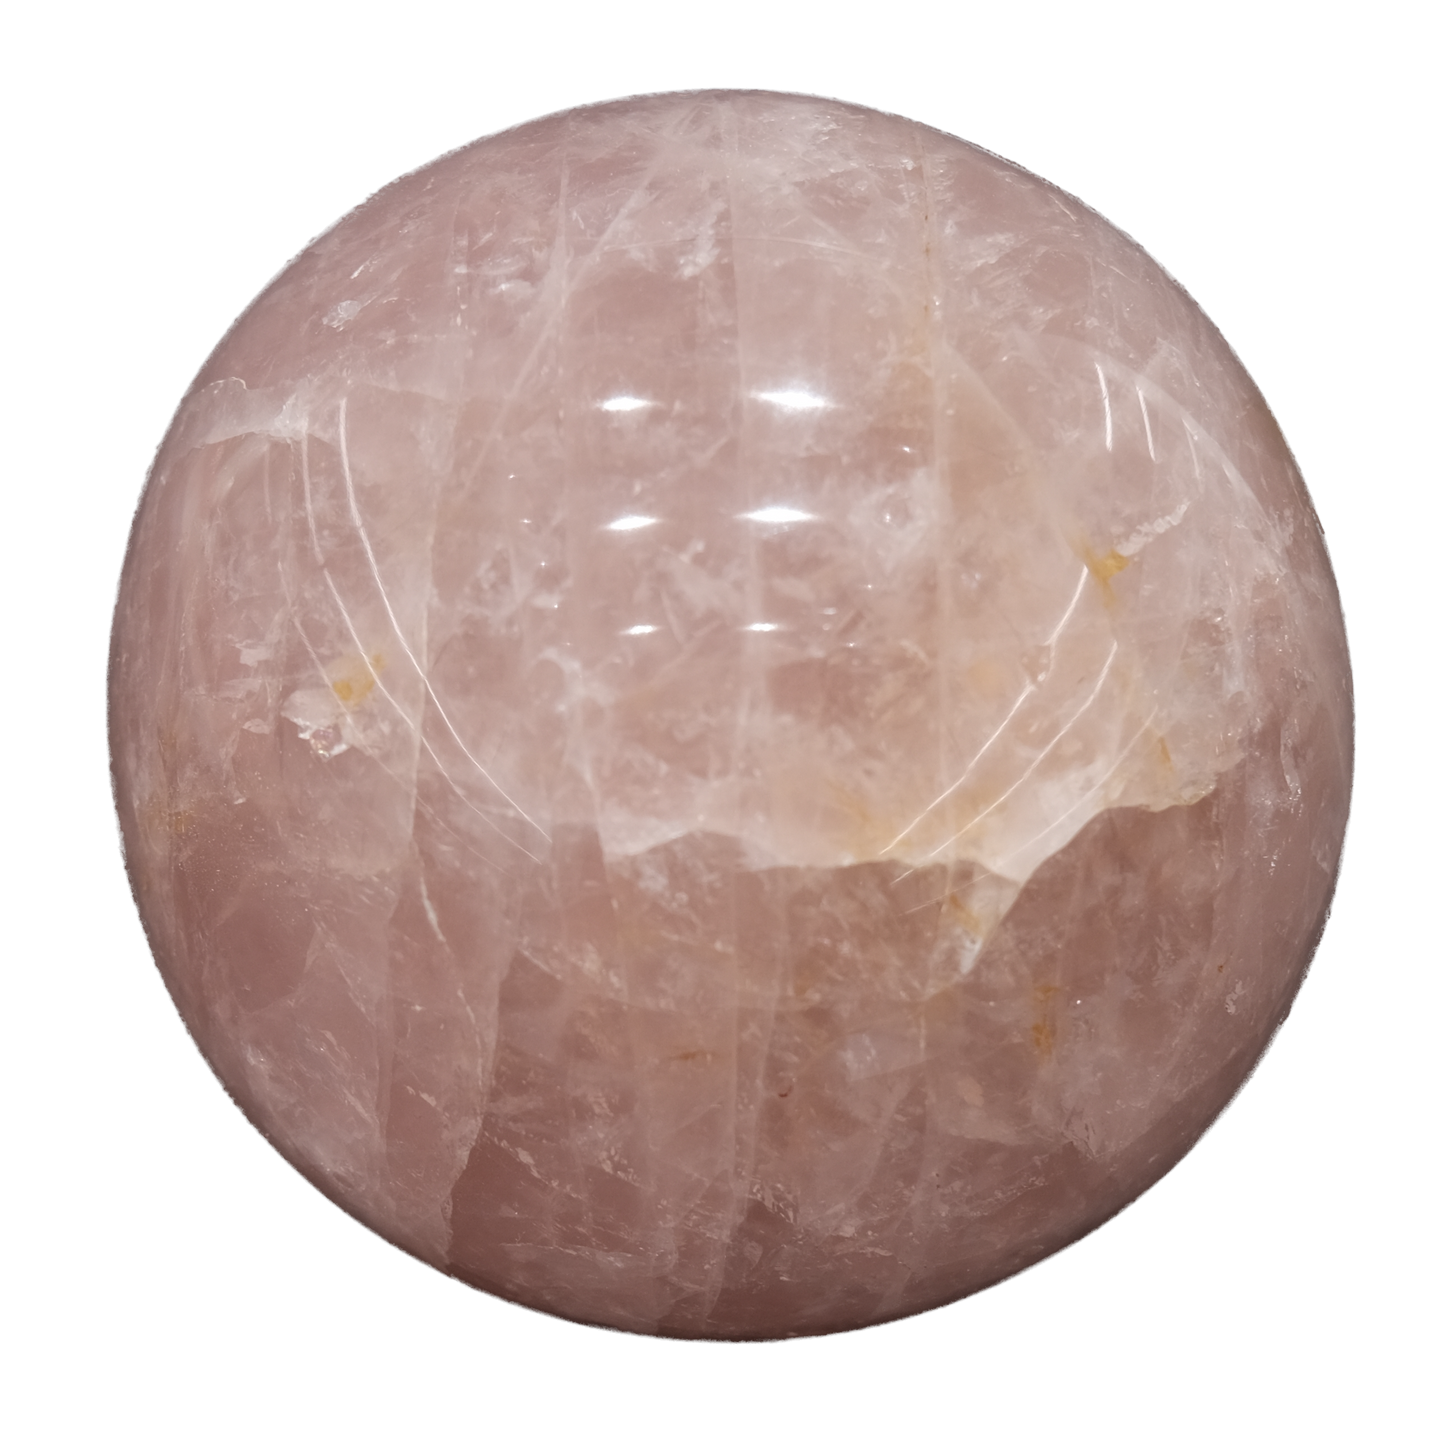 Rose Quartz Sphere 891g